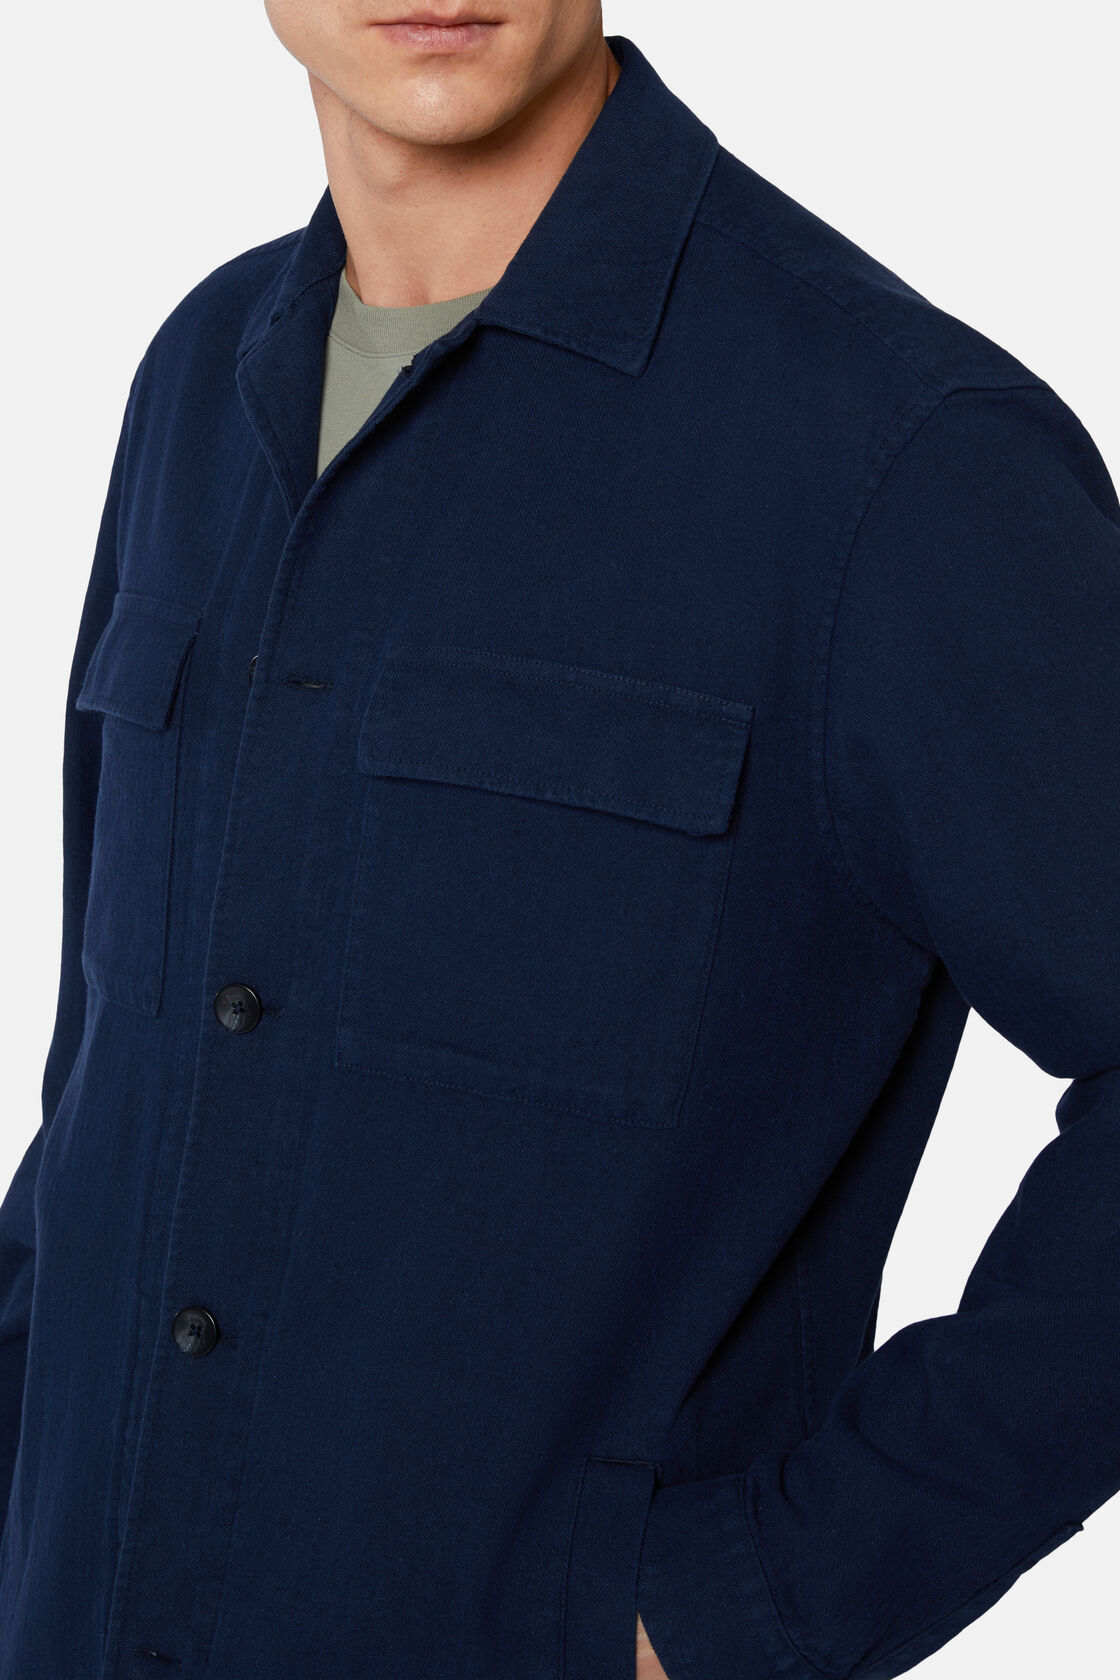 Hemdjacke aus Leinen, Navy blau, hi-res